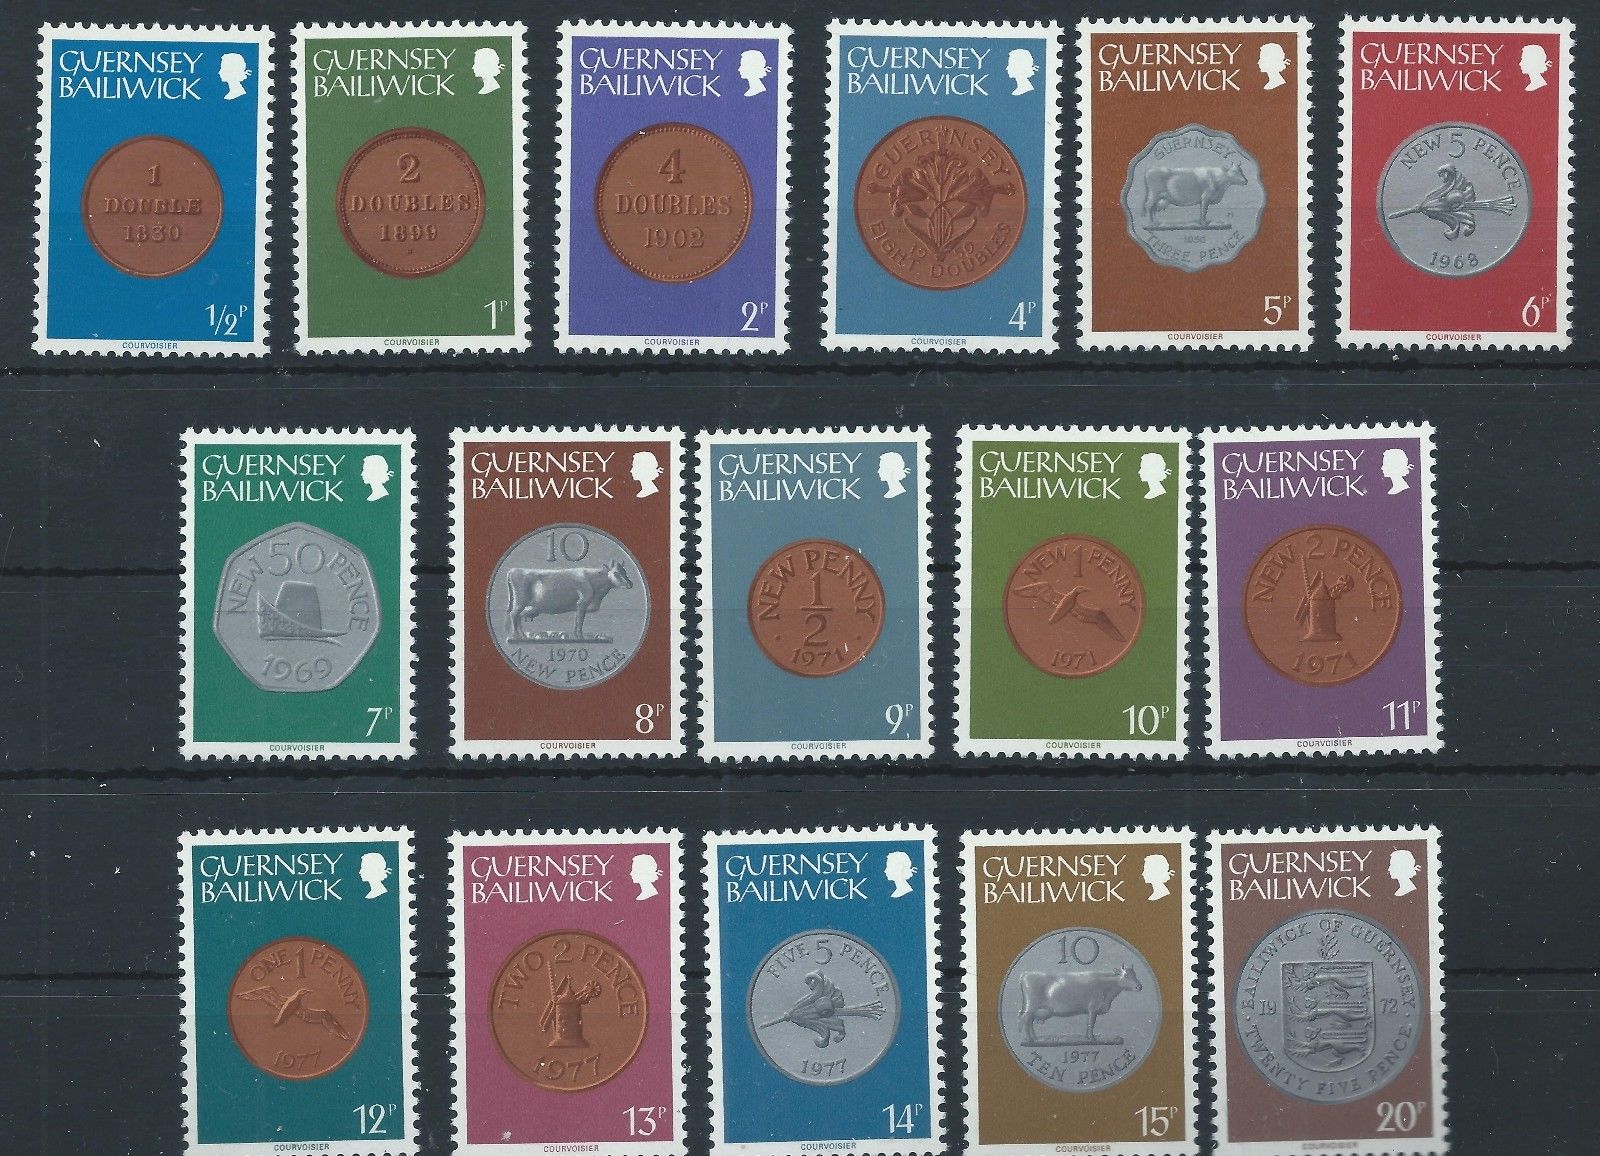 Guernsey 1979 - Monede, serie neuzata